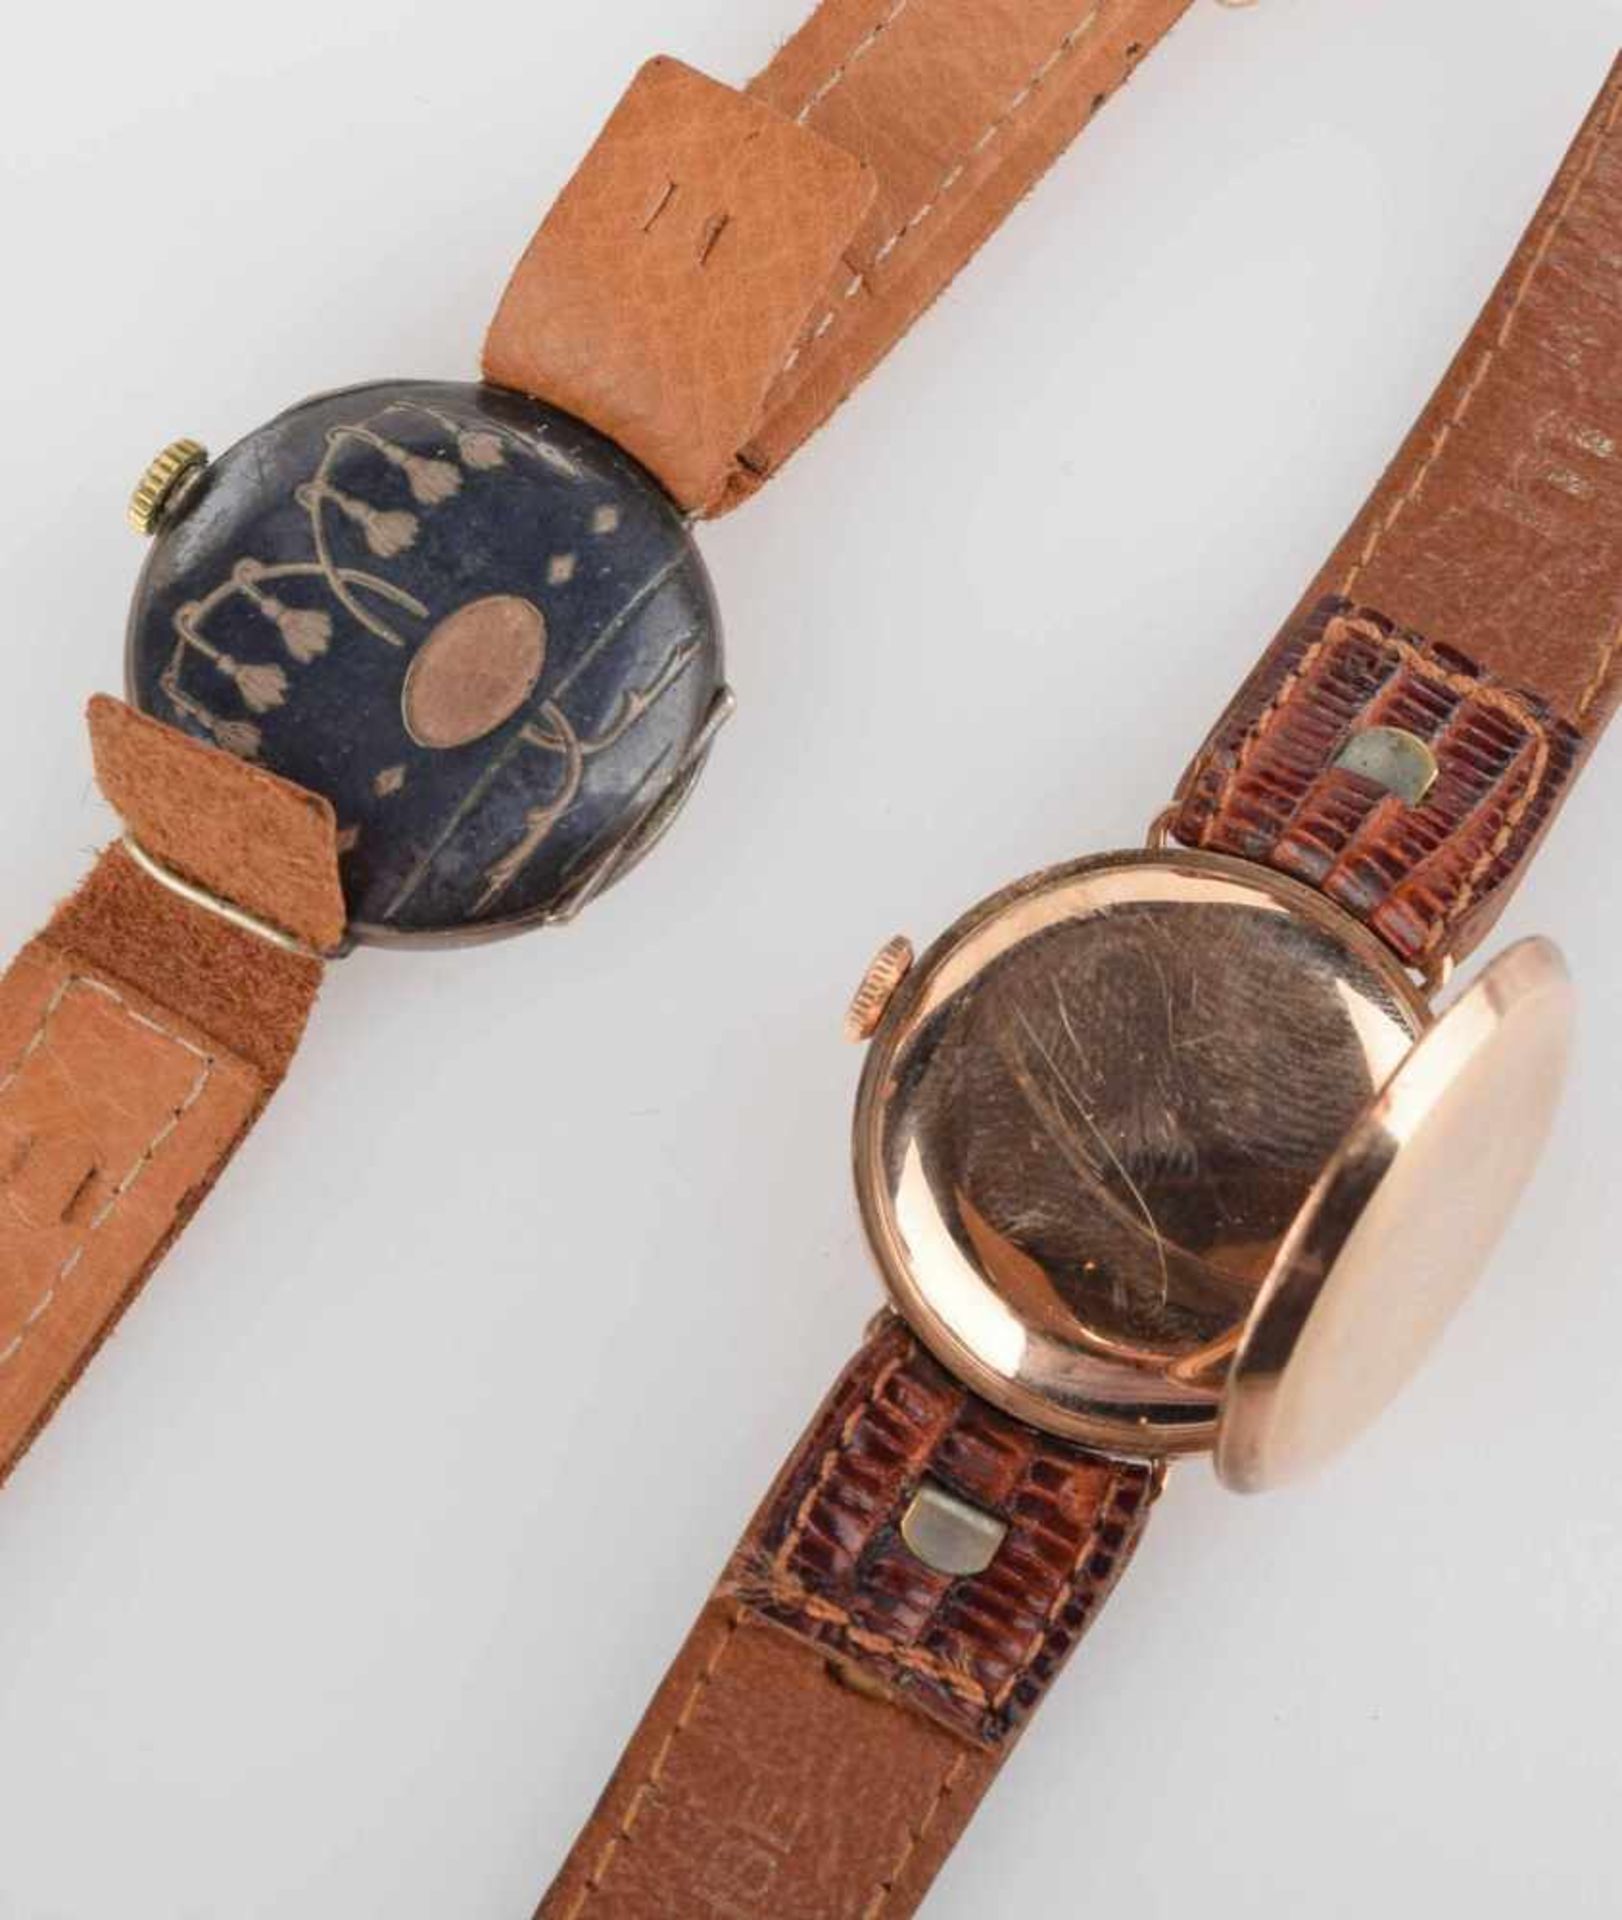 Zwei Armbanduhren 1 x Gehäuse RG 375, Handaufzug (ungeprüft), helles Zifferblatt bez. "Dominant", - Bild 3 aus 3